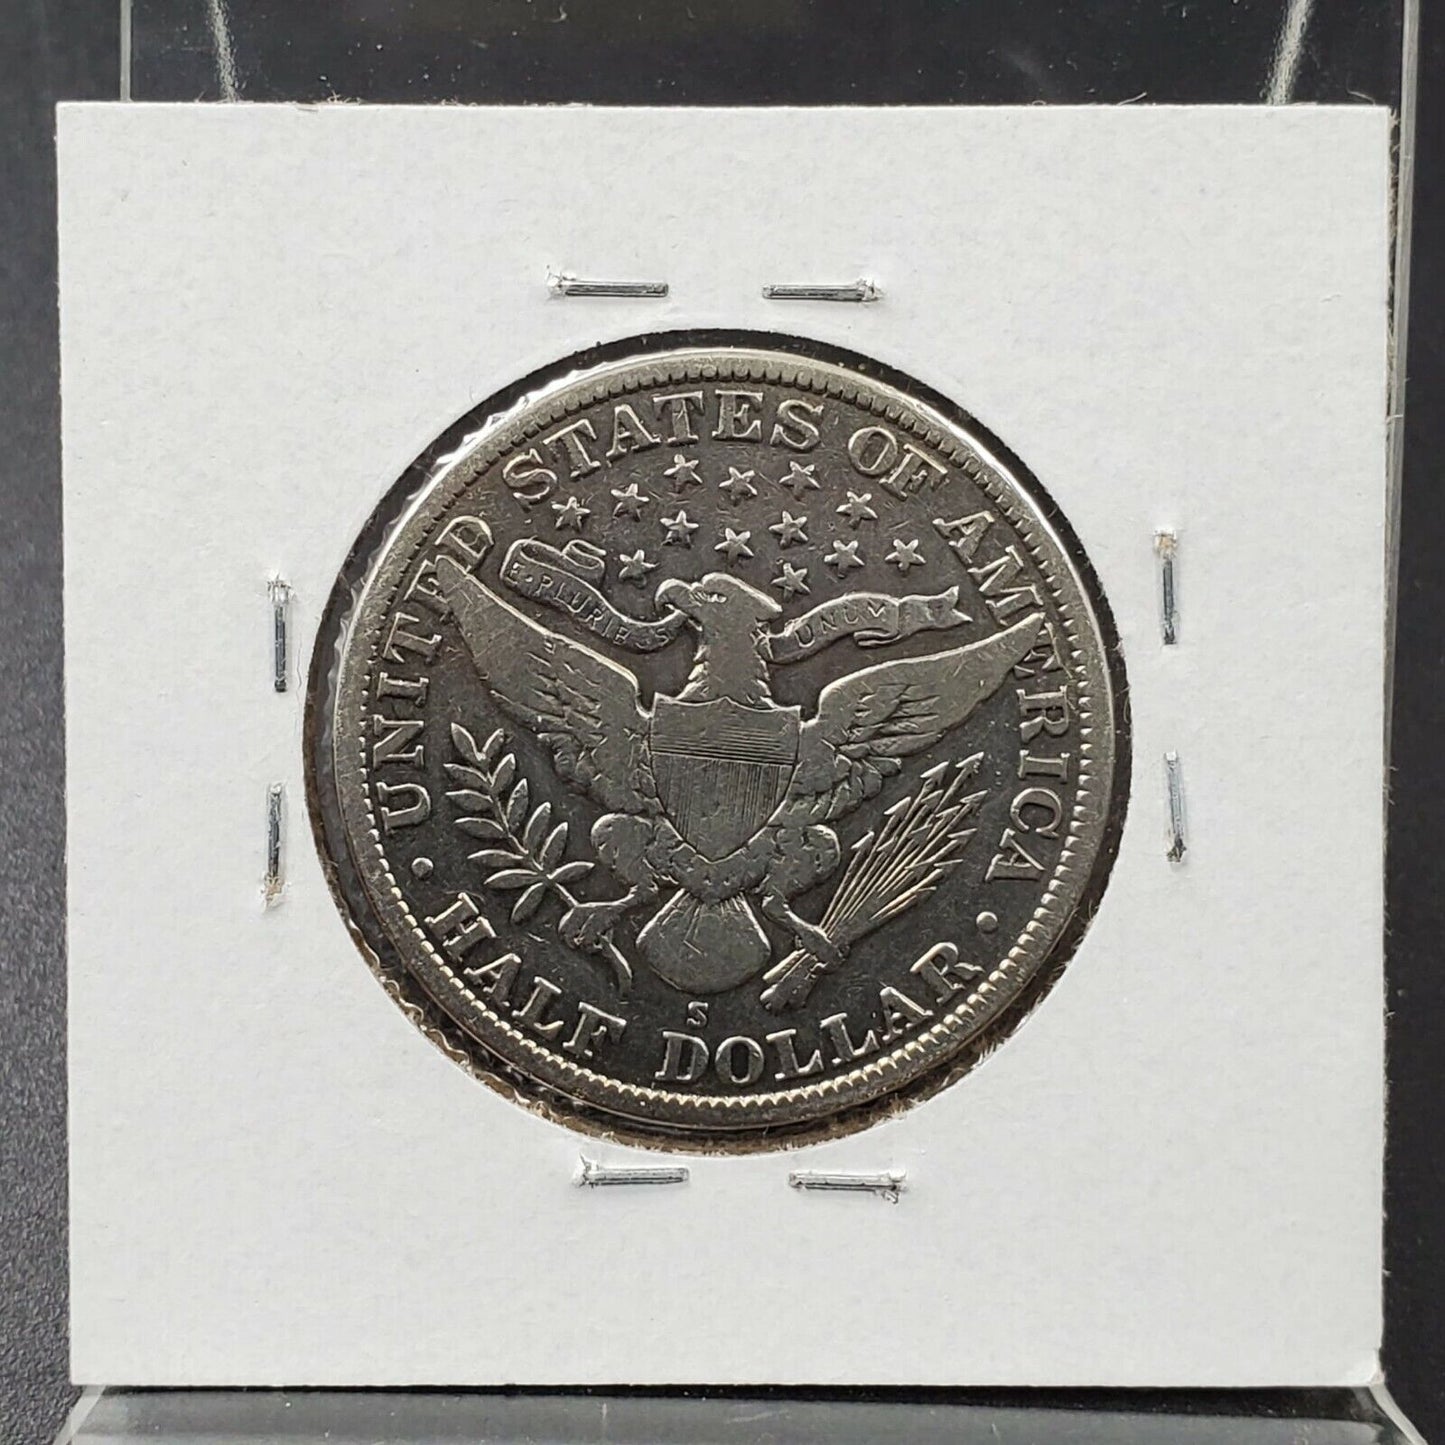 1912 S Barber Silver Eagle Half Dollar Coin Average VF Details Detail grade